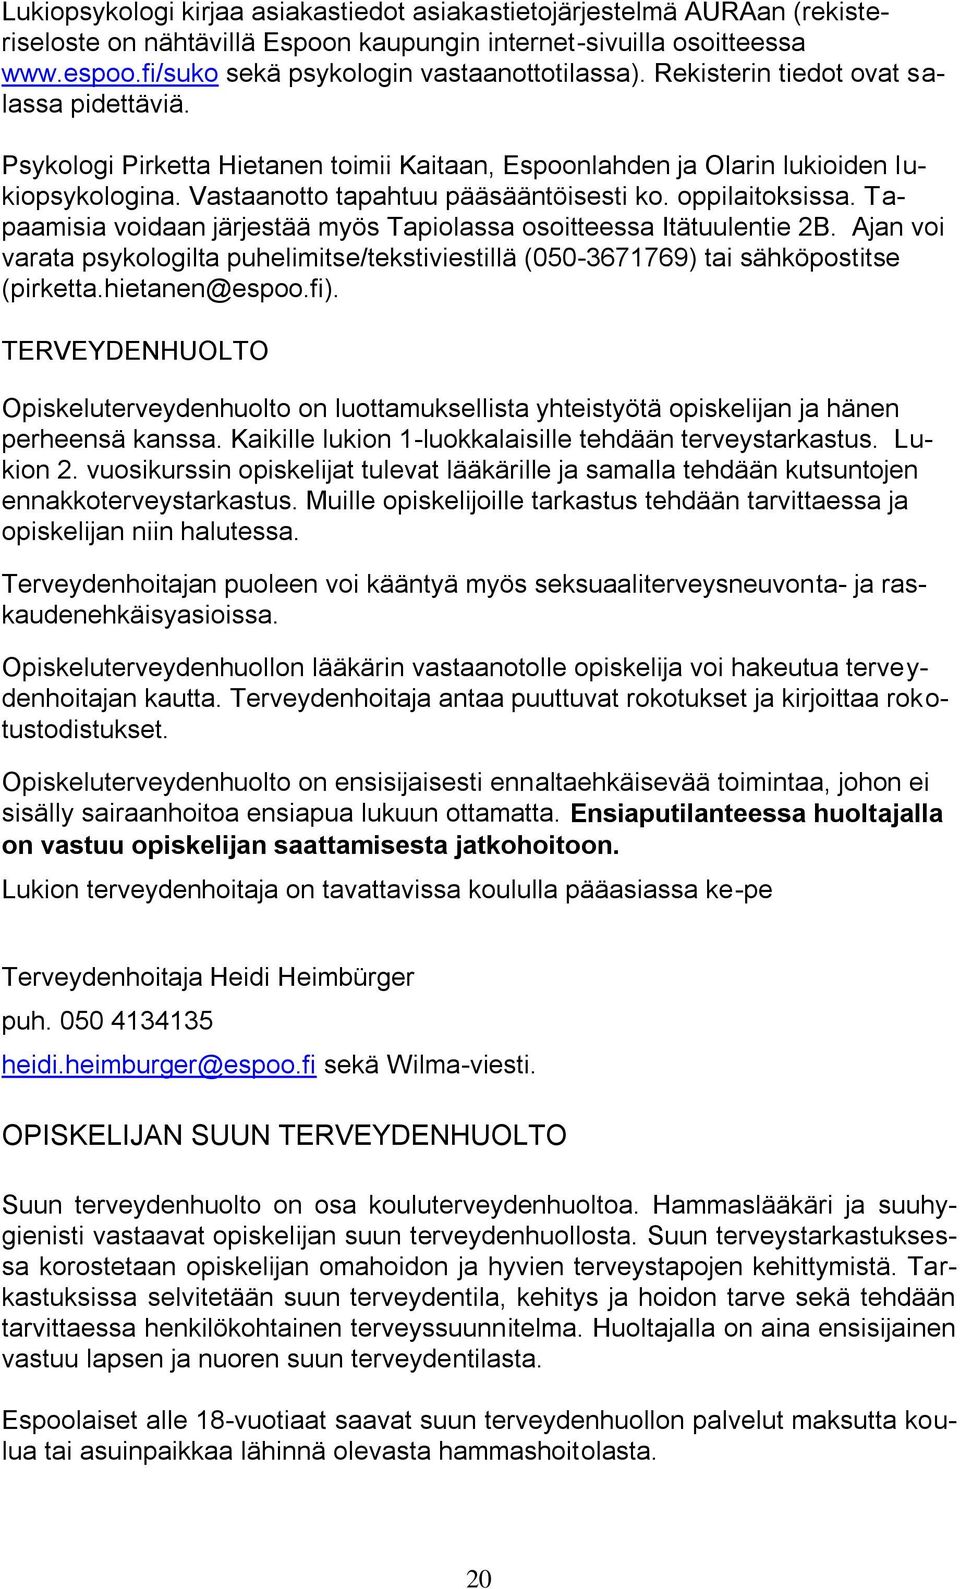 Tapaamisia voidaan järjestää myös Tapiolassa osoitteessa Itätuulentie 2B. Ajan voi varata psykologilta puhelimitse/tekstiviestillä (050-3671769) tai sähköpostitse (pirketta.hietanen@espoo.fi).